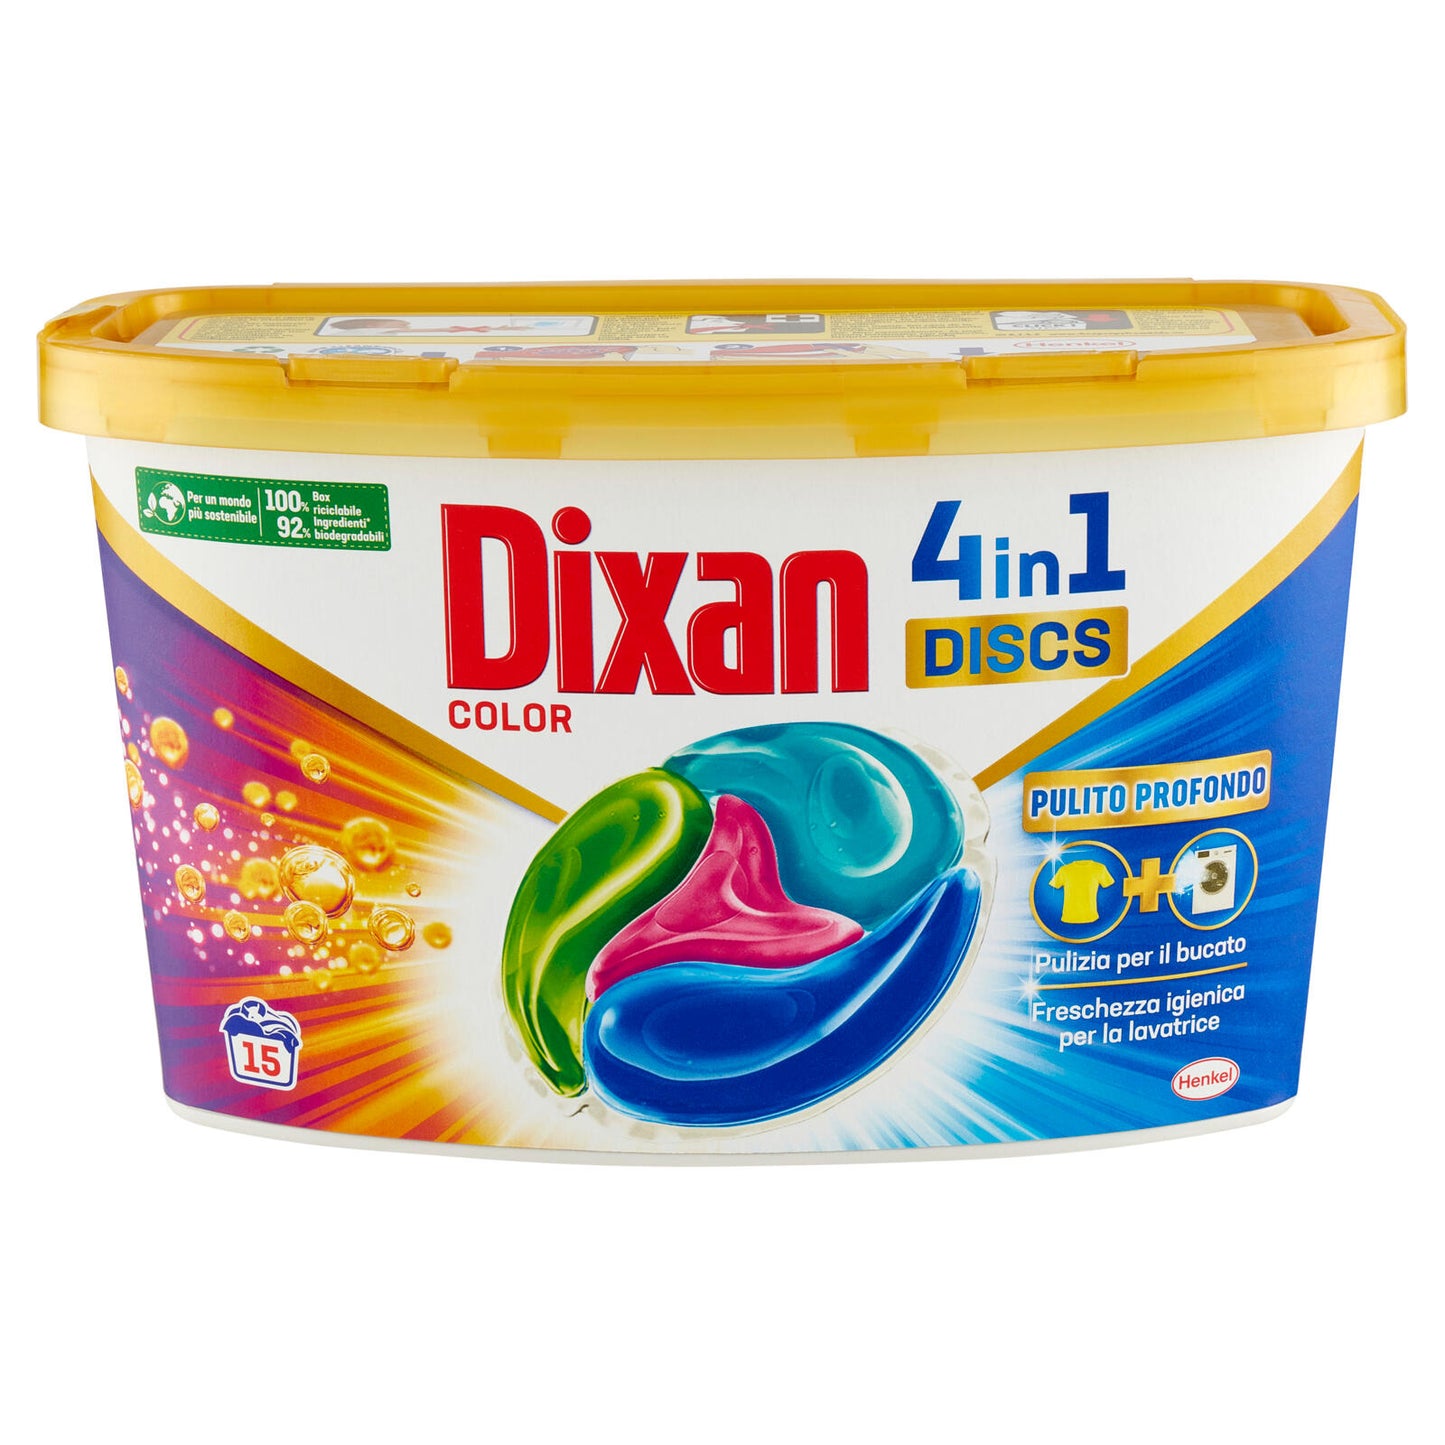 DIXAN Discs Color 15pz (375g)